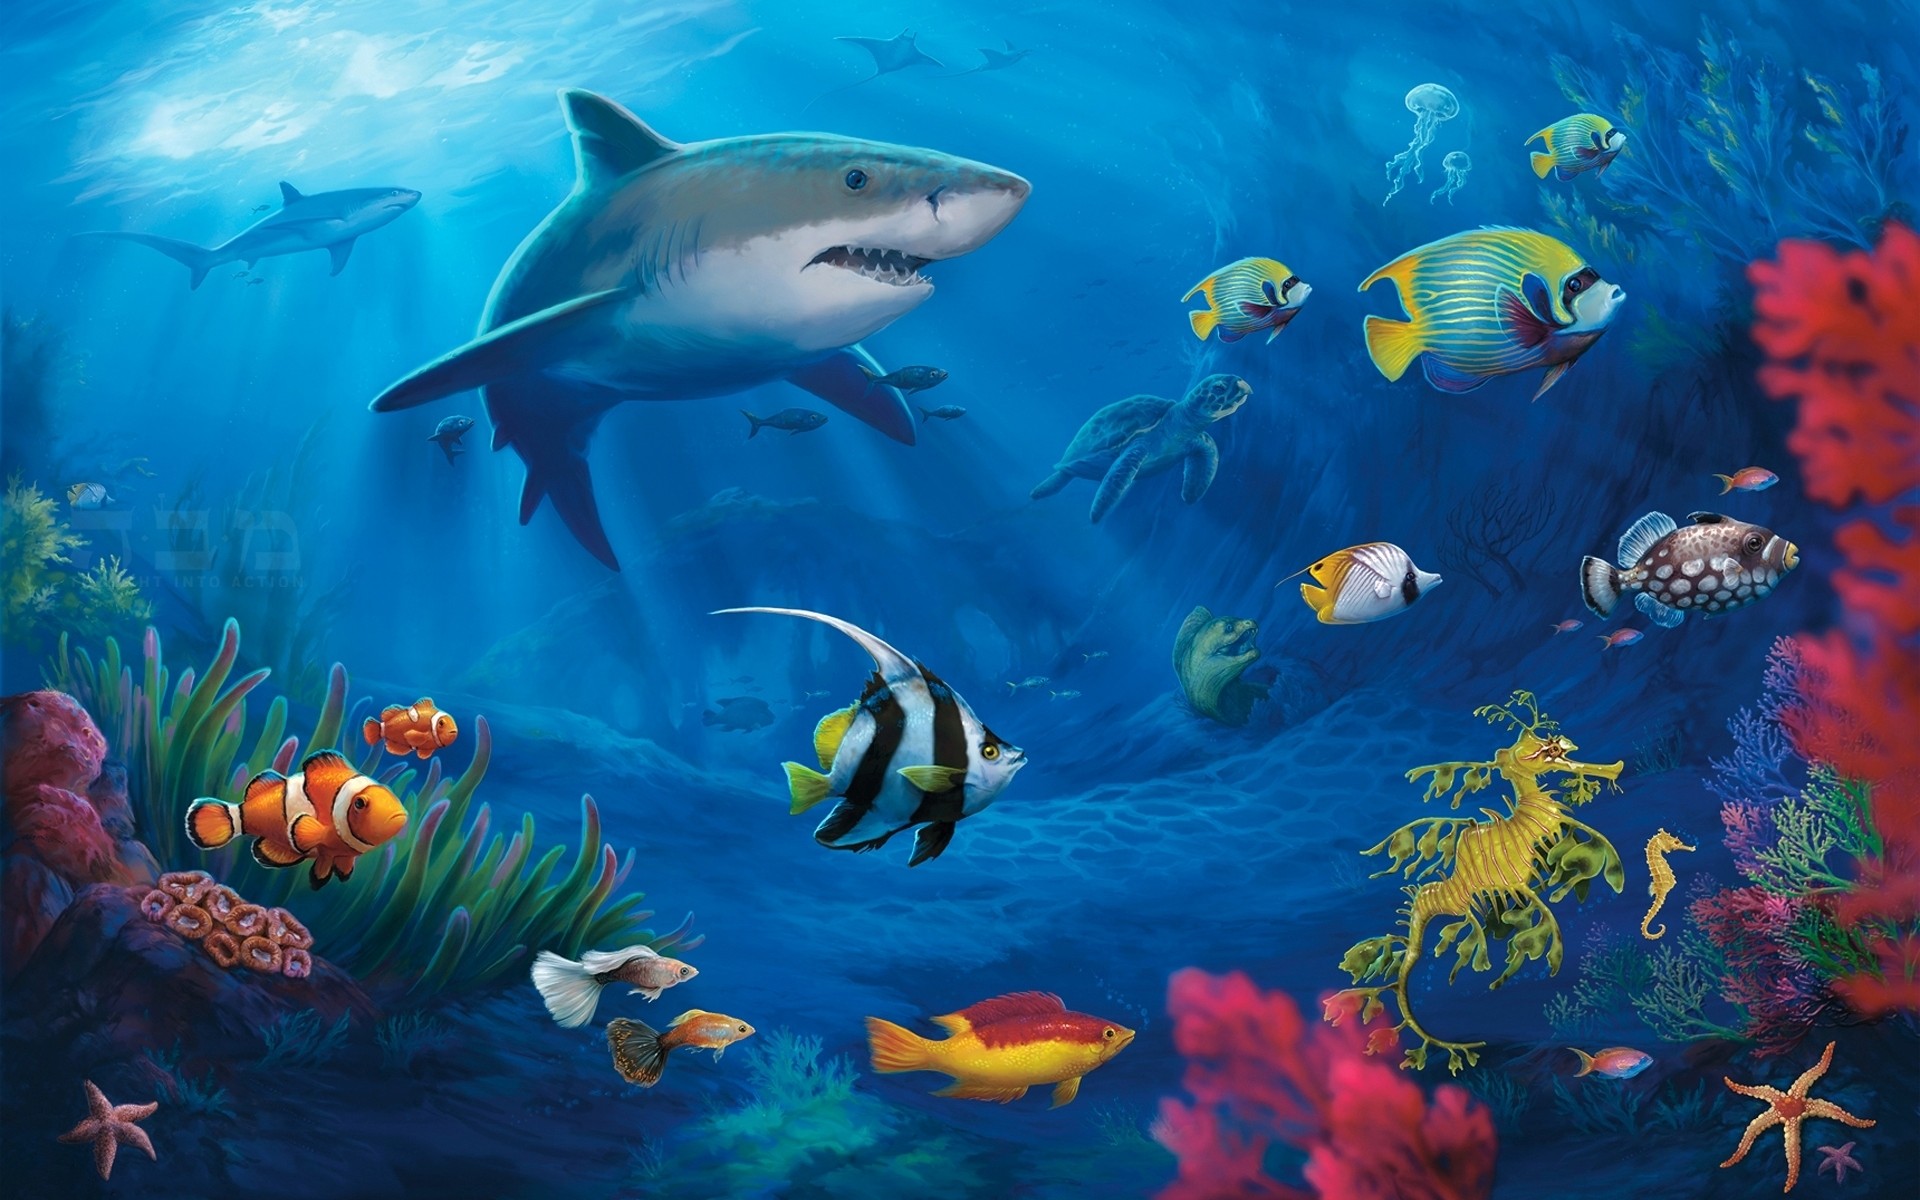 1920x1200 Underwater #2241945 | Underwater | Pinterest | Underwater, Hd ... Colorful  Underwater Fish Wallpaper ...